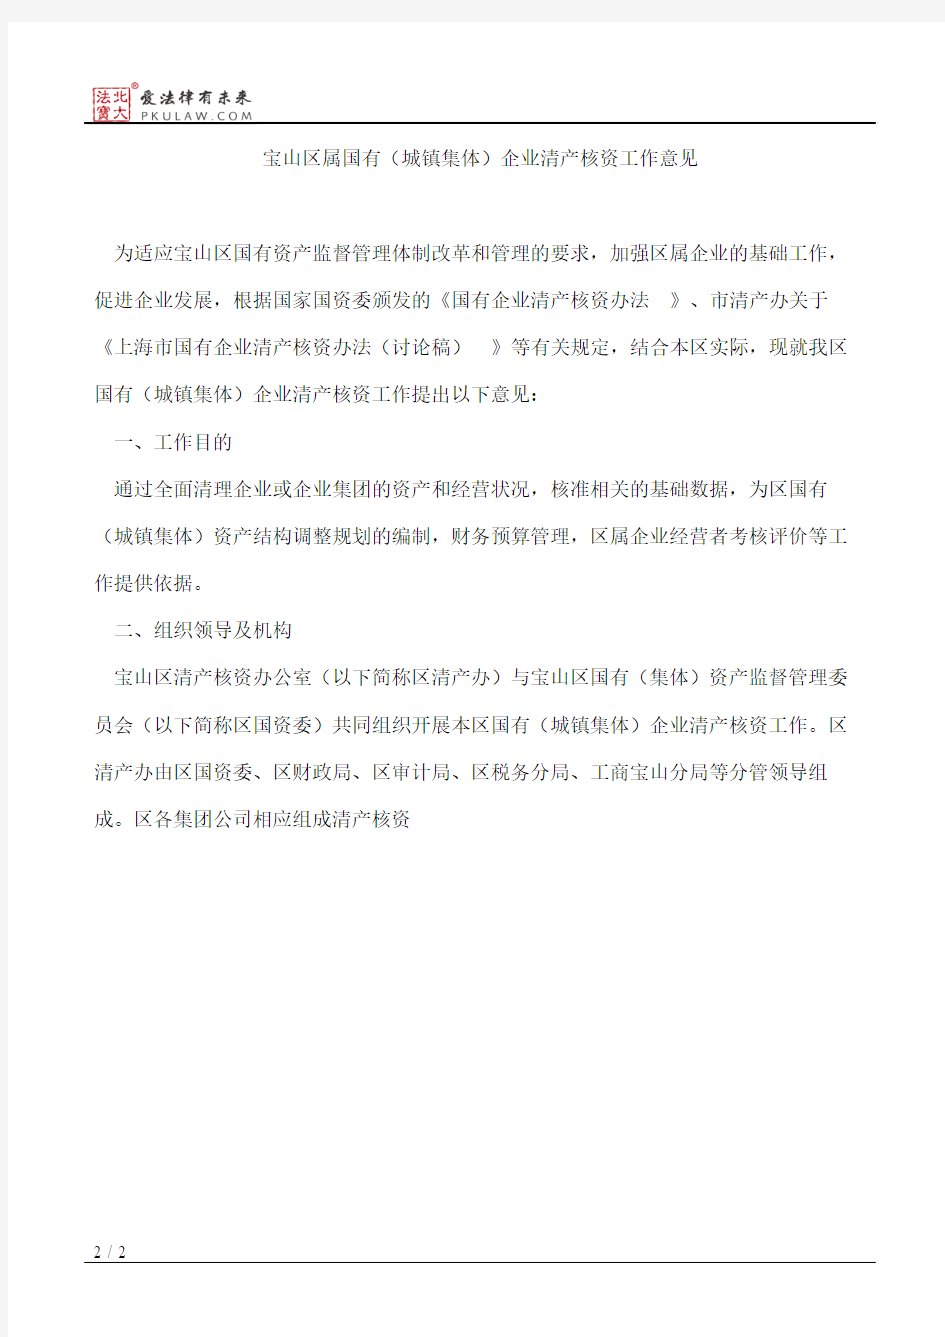 上海市宝山区人民政府办公室关于转发宝山区属国有(城镇集体)企业